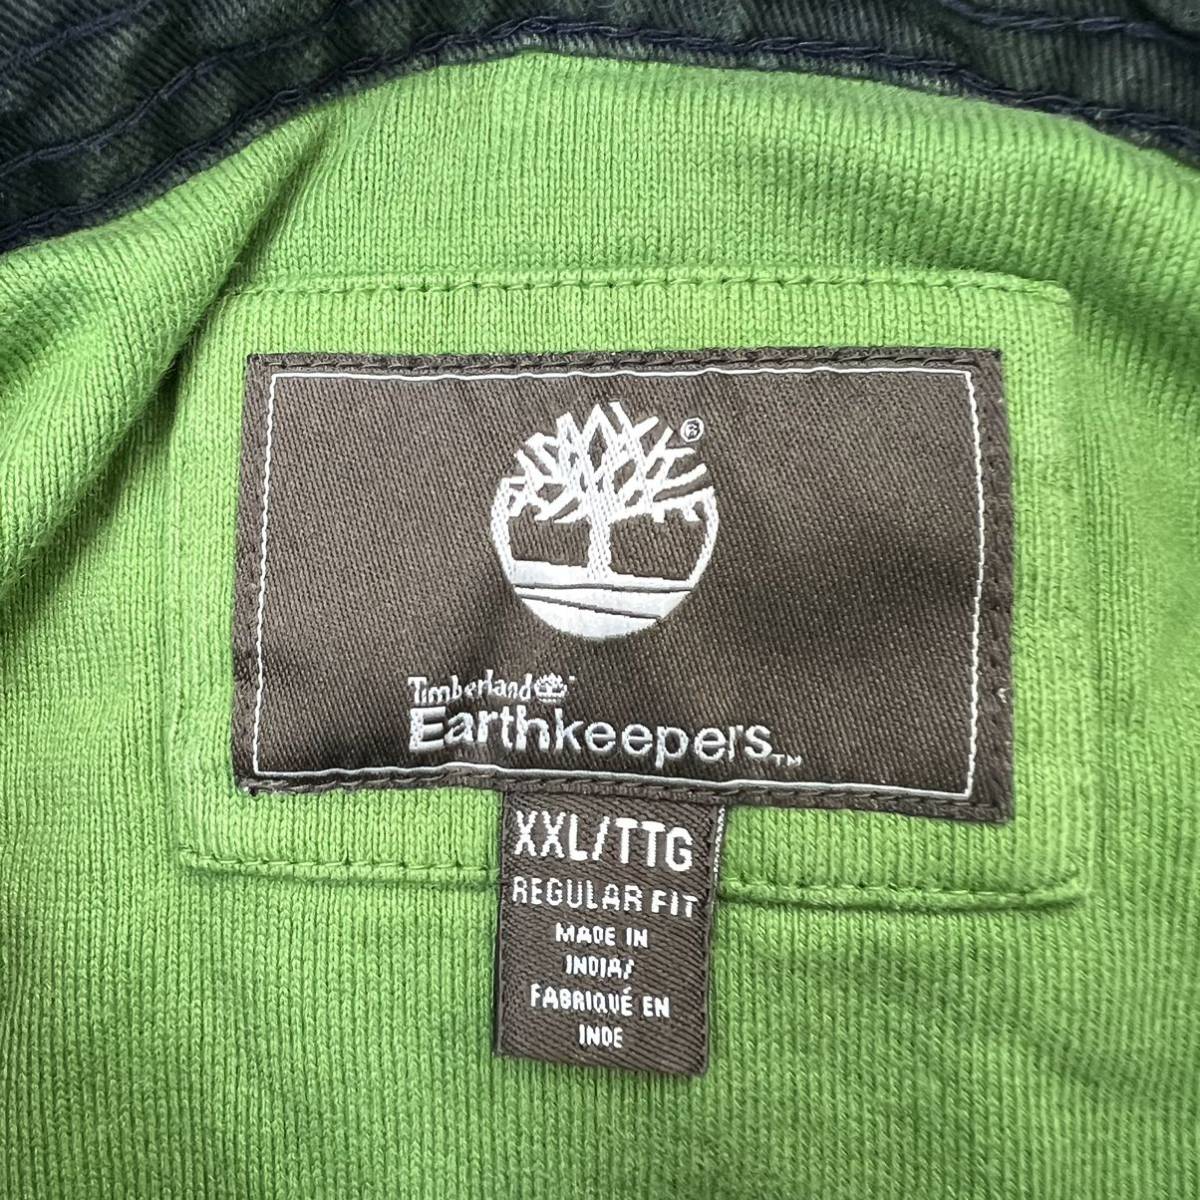 Timberland * мягкий оттенок * рубашка-поло Rugger рубашка короткий рукав зеленый XXL довольно большой American Casual Street б/у одежда стандартный Timberland #AE272